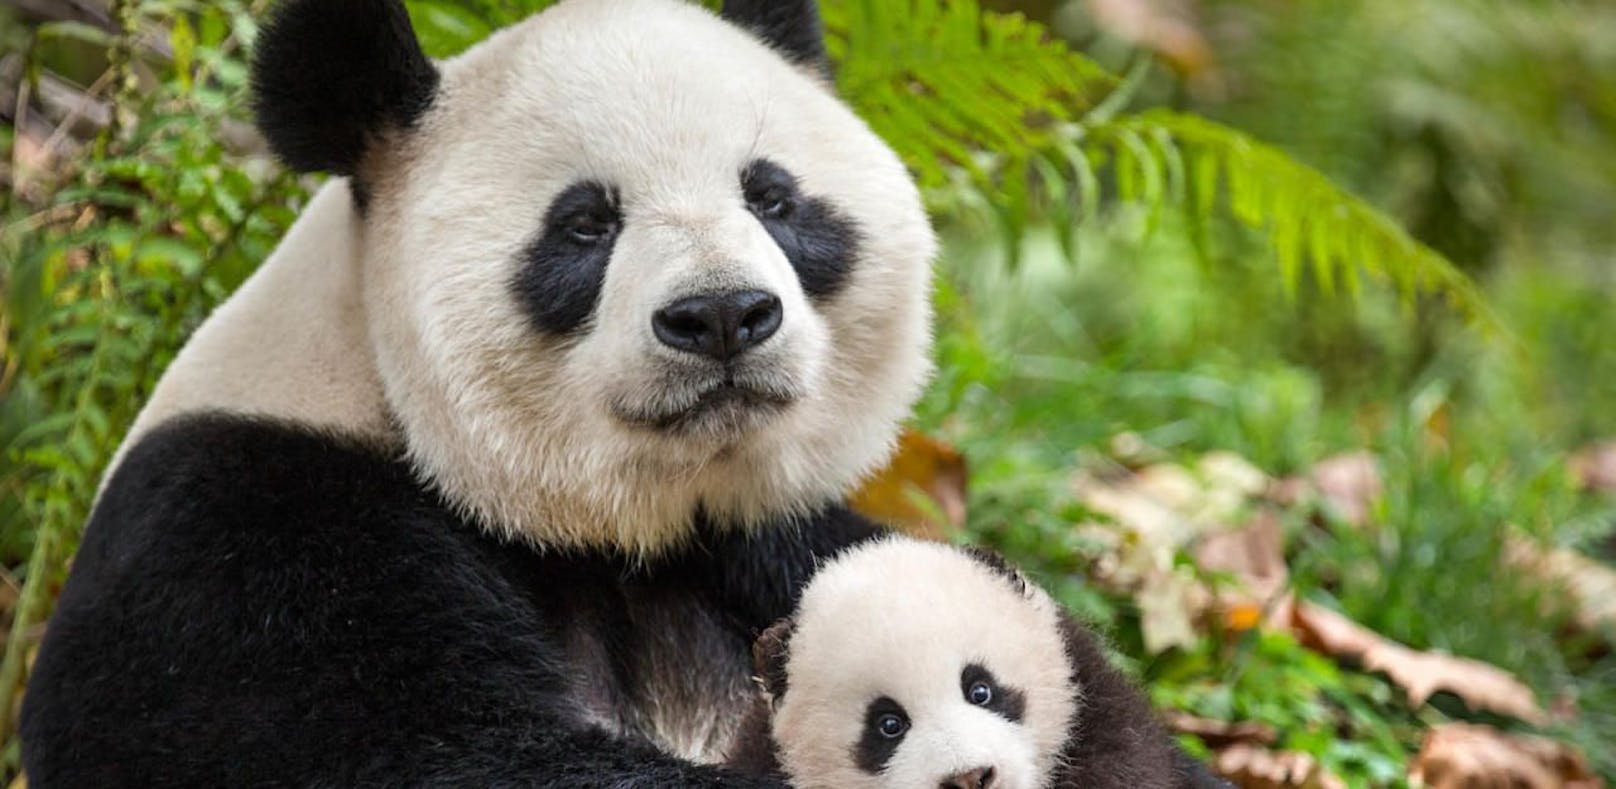 Pandas Ya Ya and Mei Mei